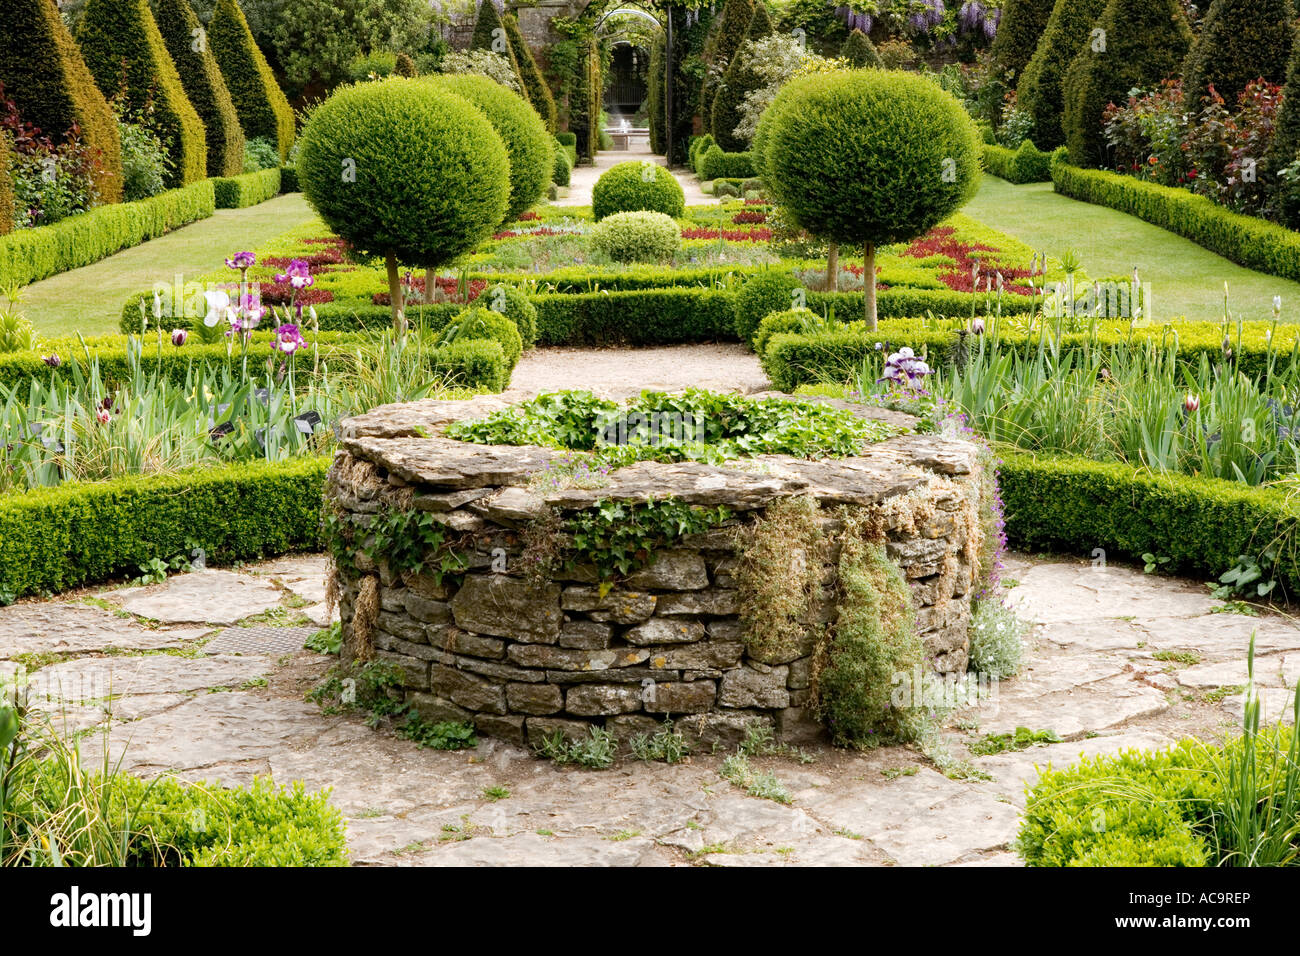 Croix celtique Jardin et bien d'Abbey House Gardens, Malmesbury, Wiltshire, Royaume-Uni, Angleterre, Grande-Bretagne Banque D'Images